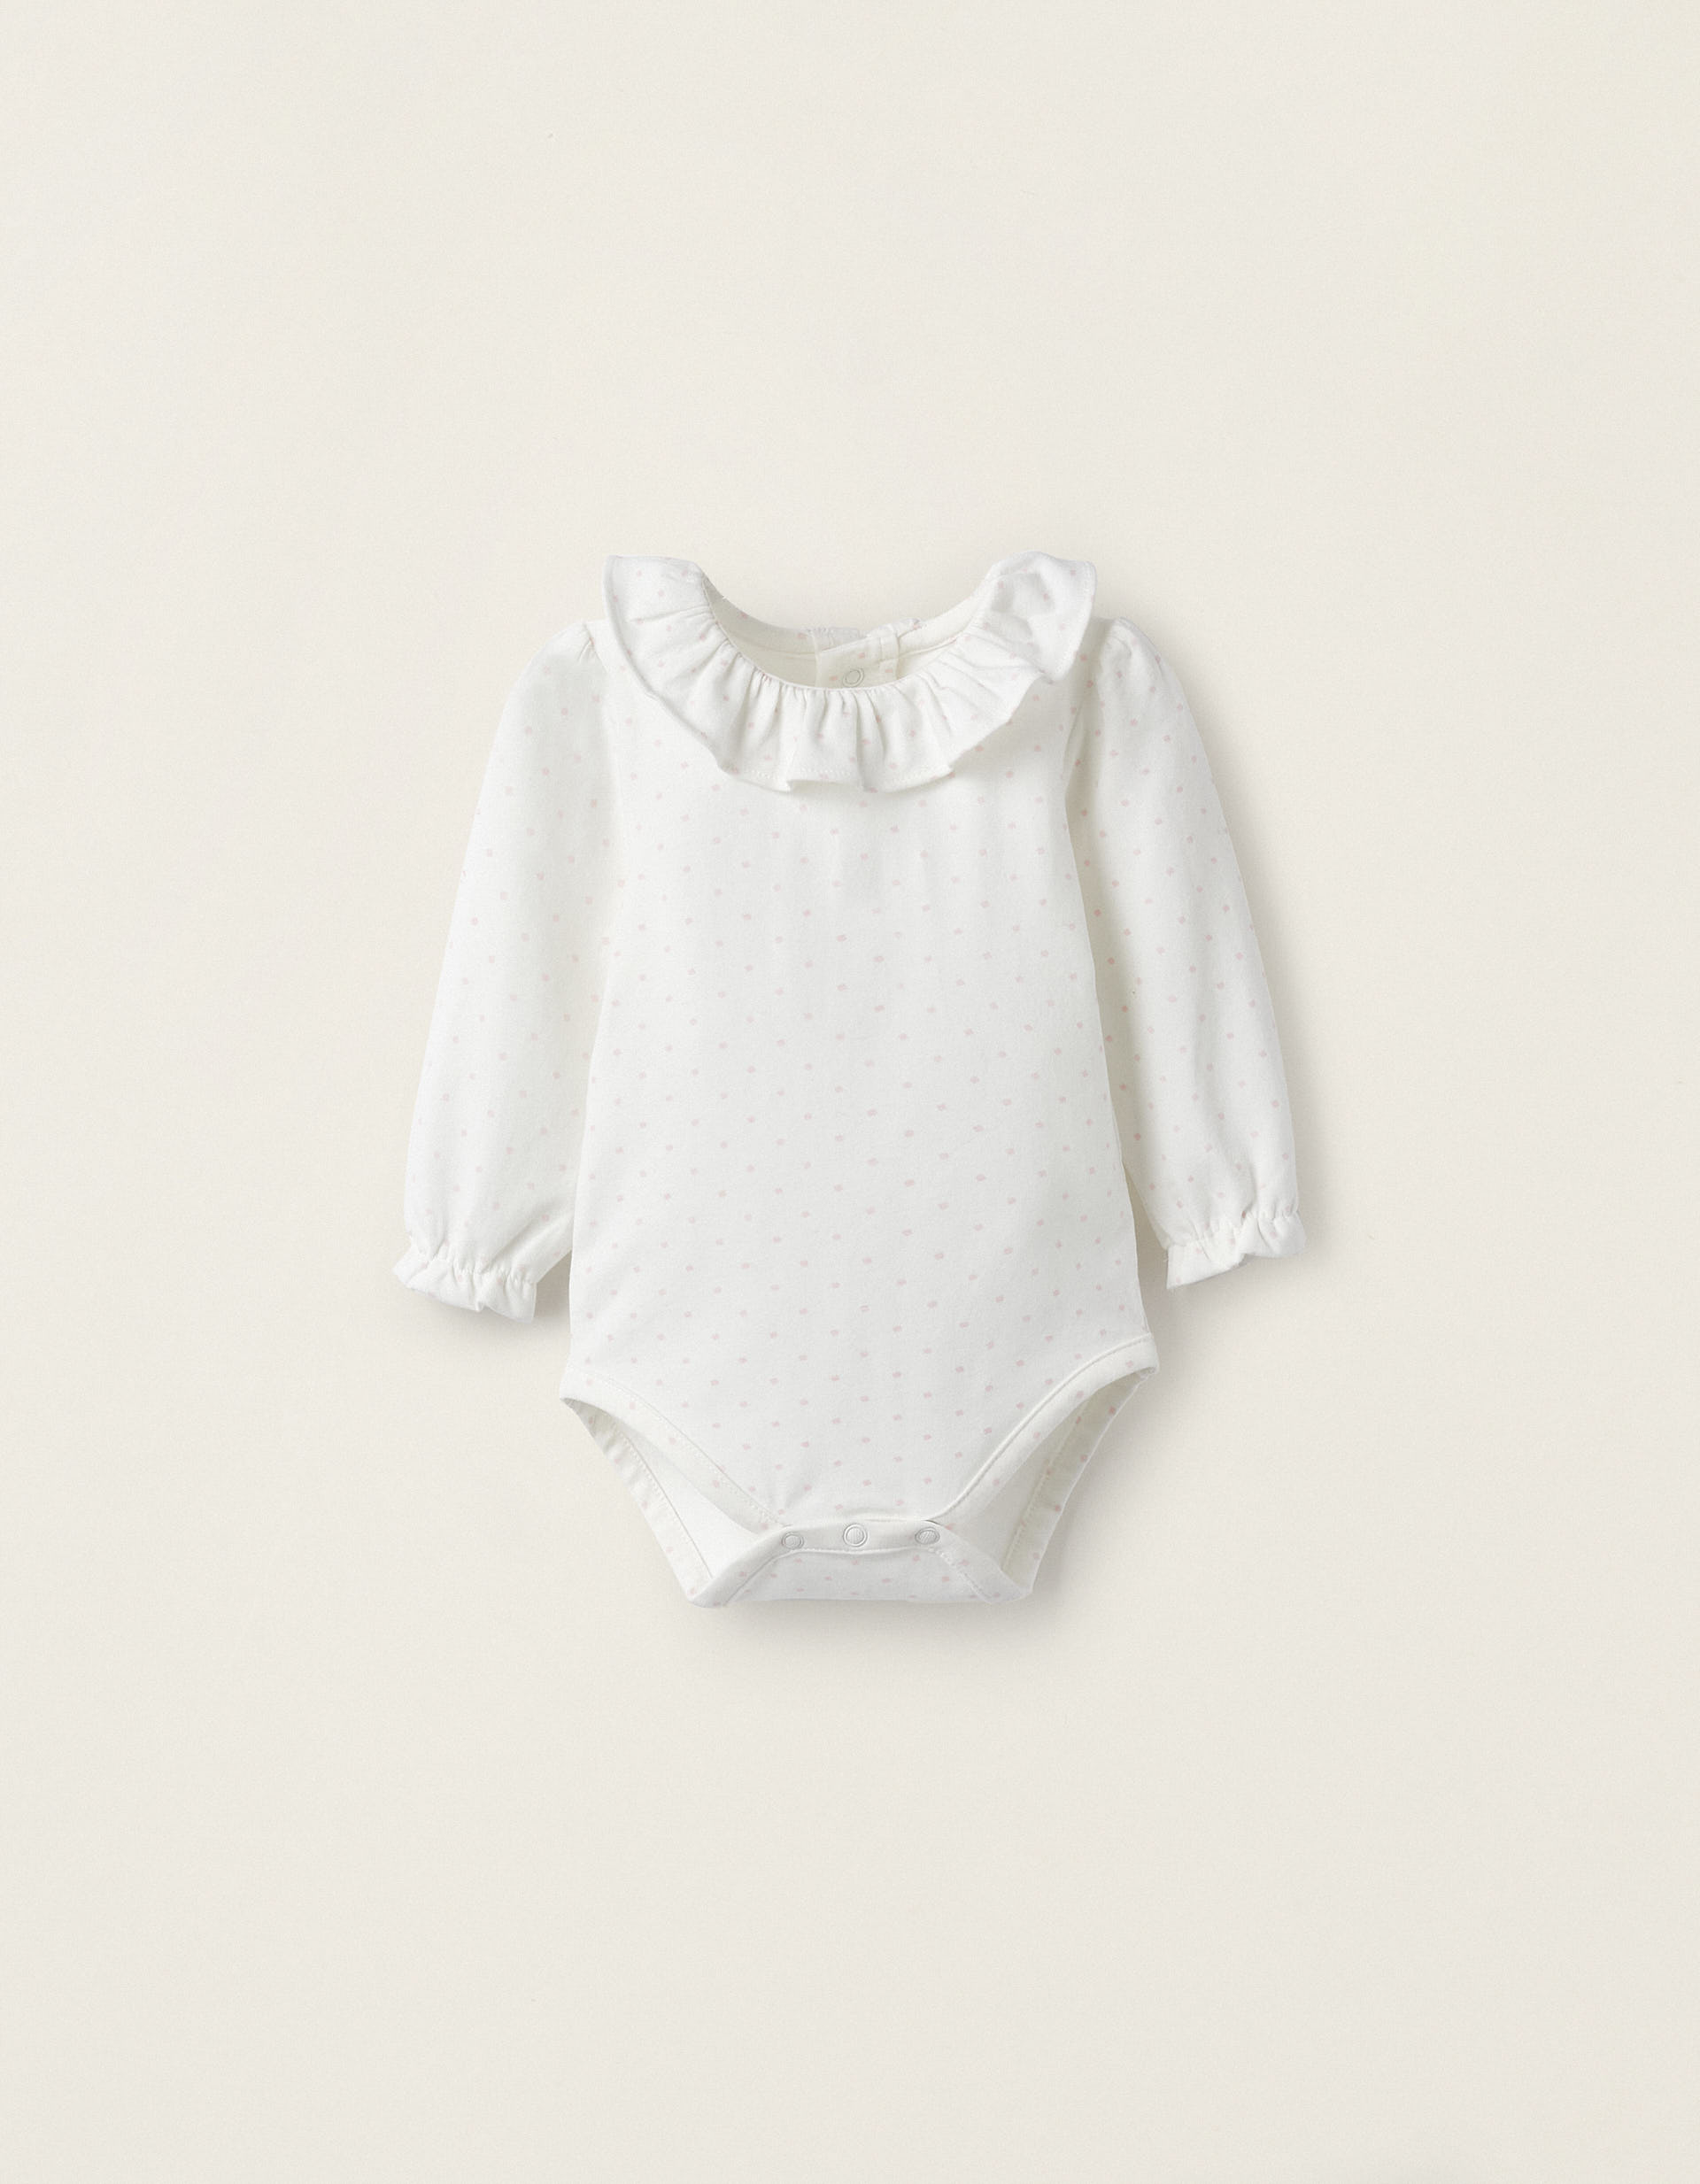 POUSSETTE body bébé en coton bio-équitable taille bebe 0/3 mois